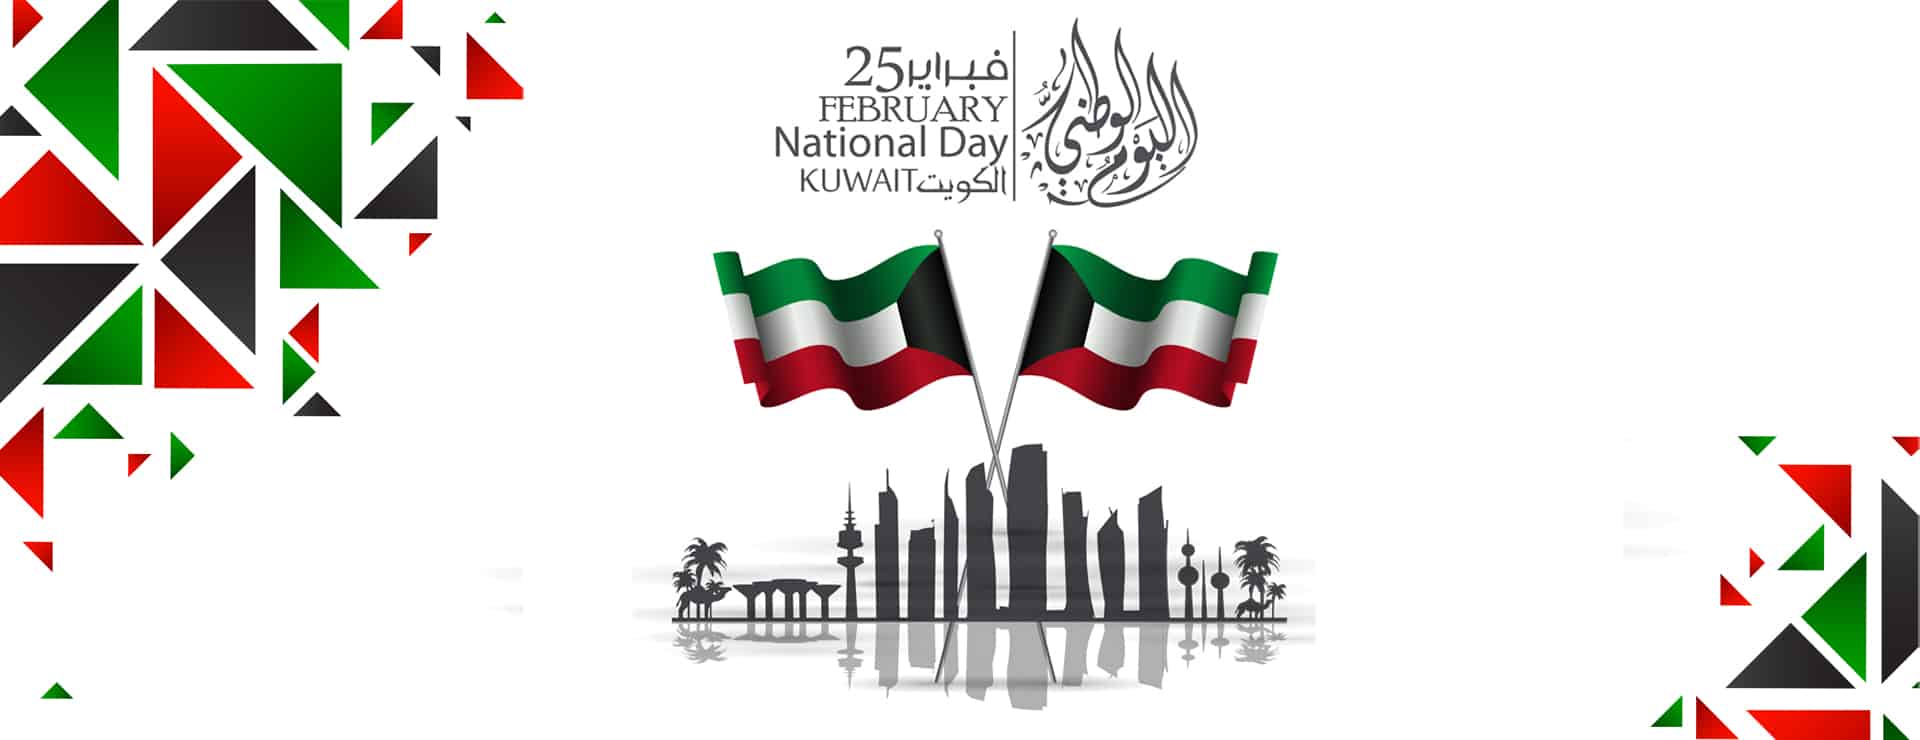 نجوم الفن يوجهون رسائل عديدة للشعب الكويتي  في اليوم الوطني 